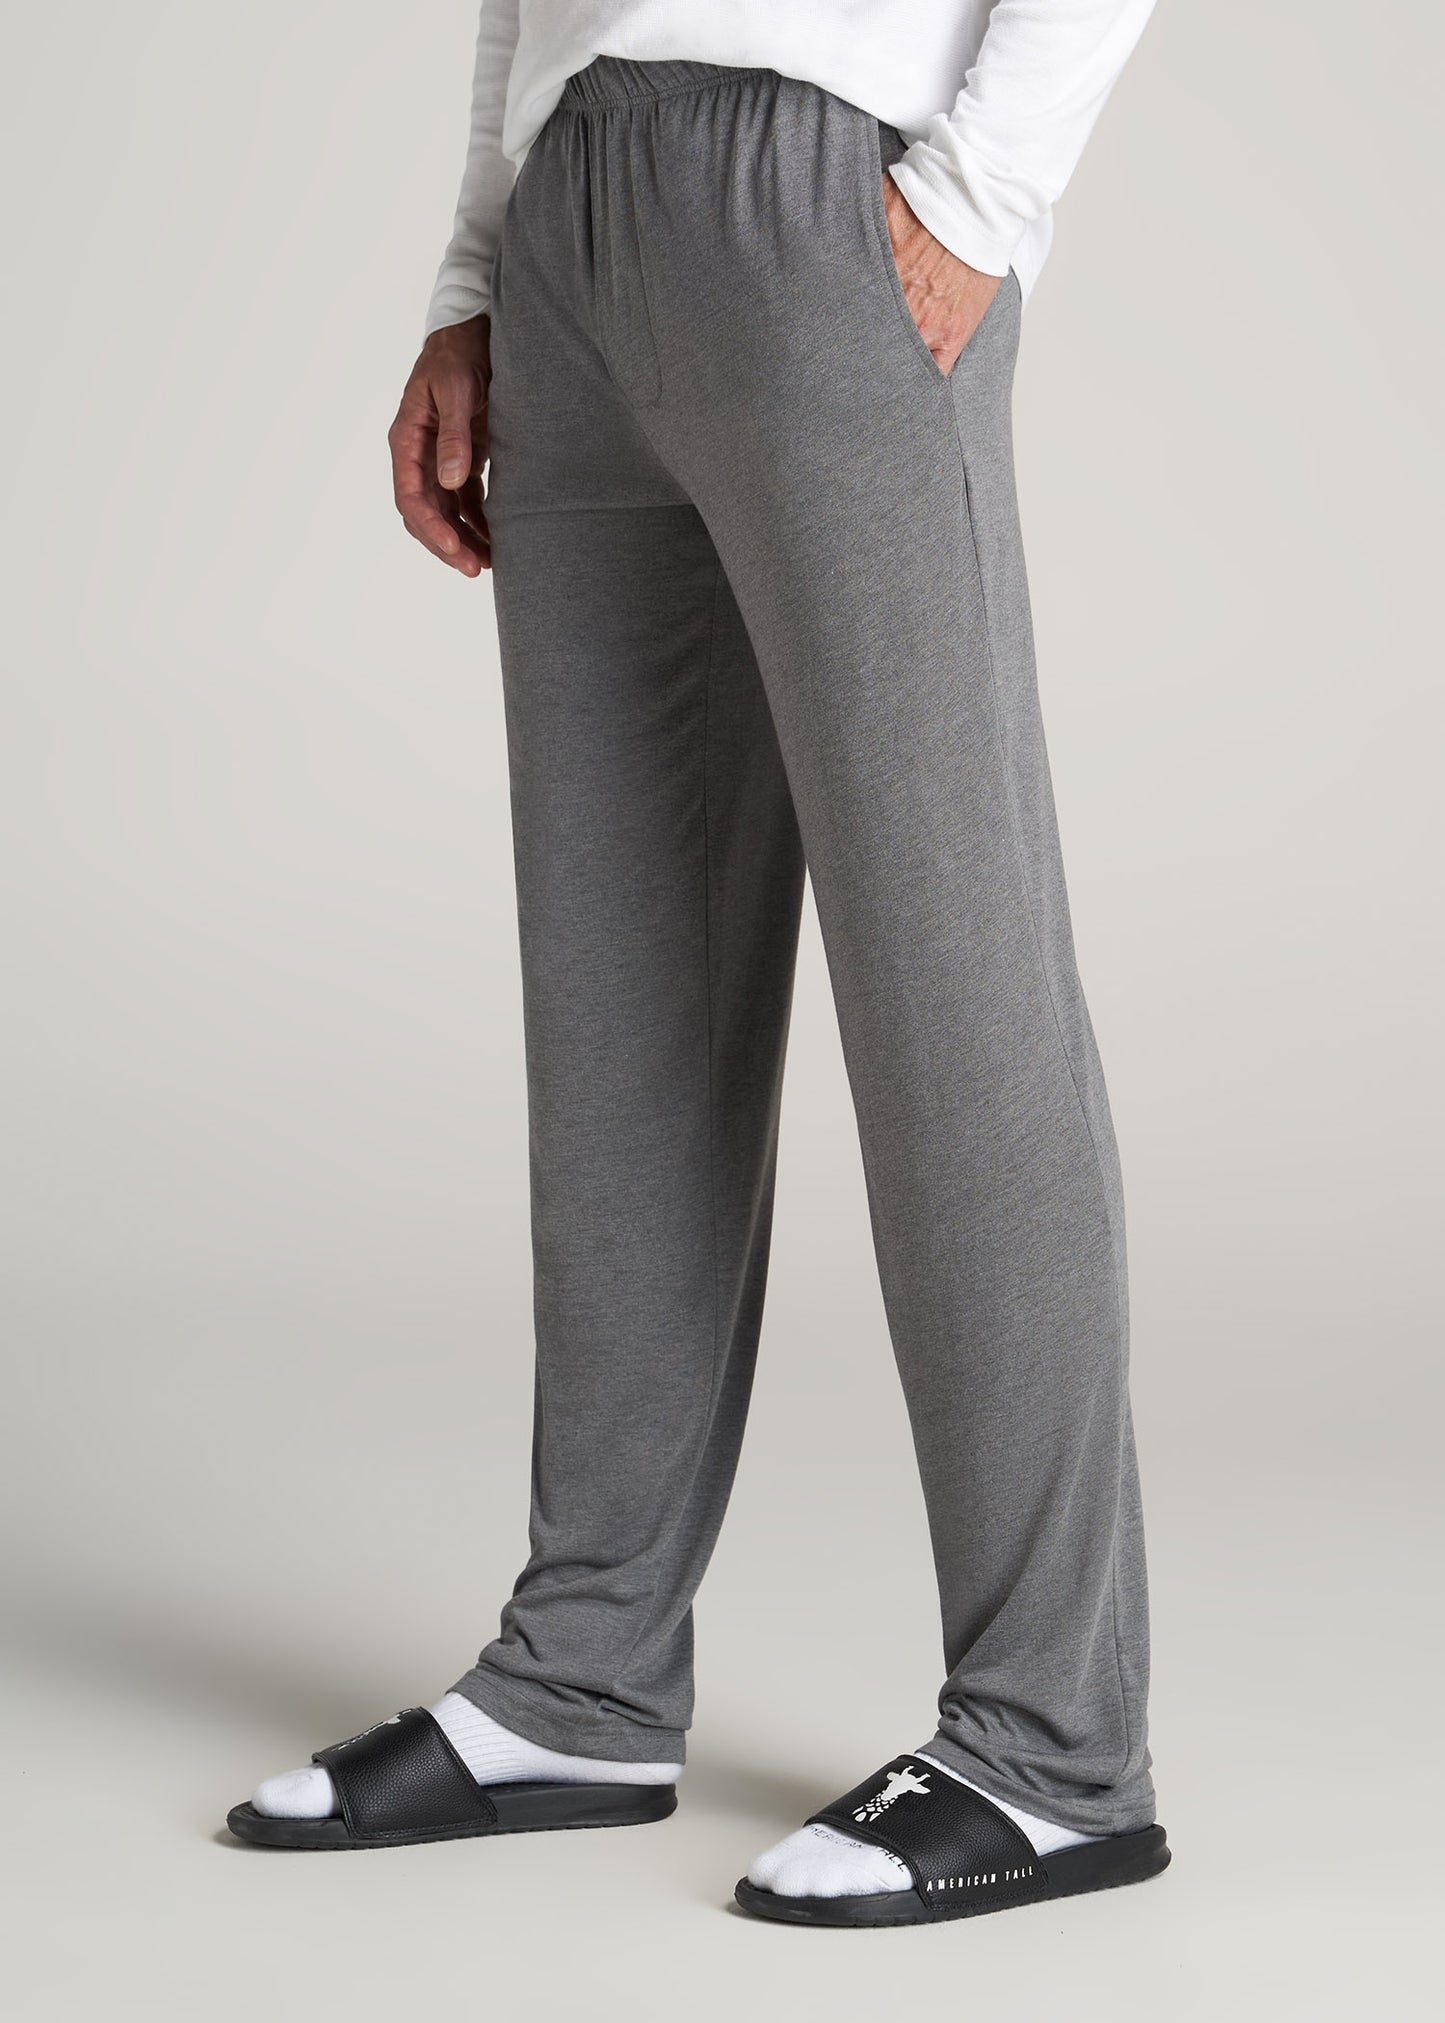 PajamaJeans® for Men in Men's Jeans